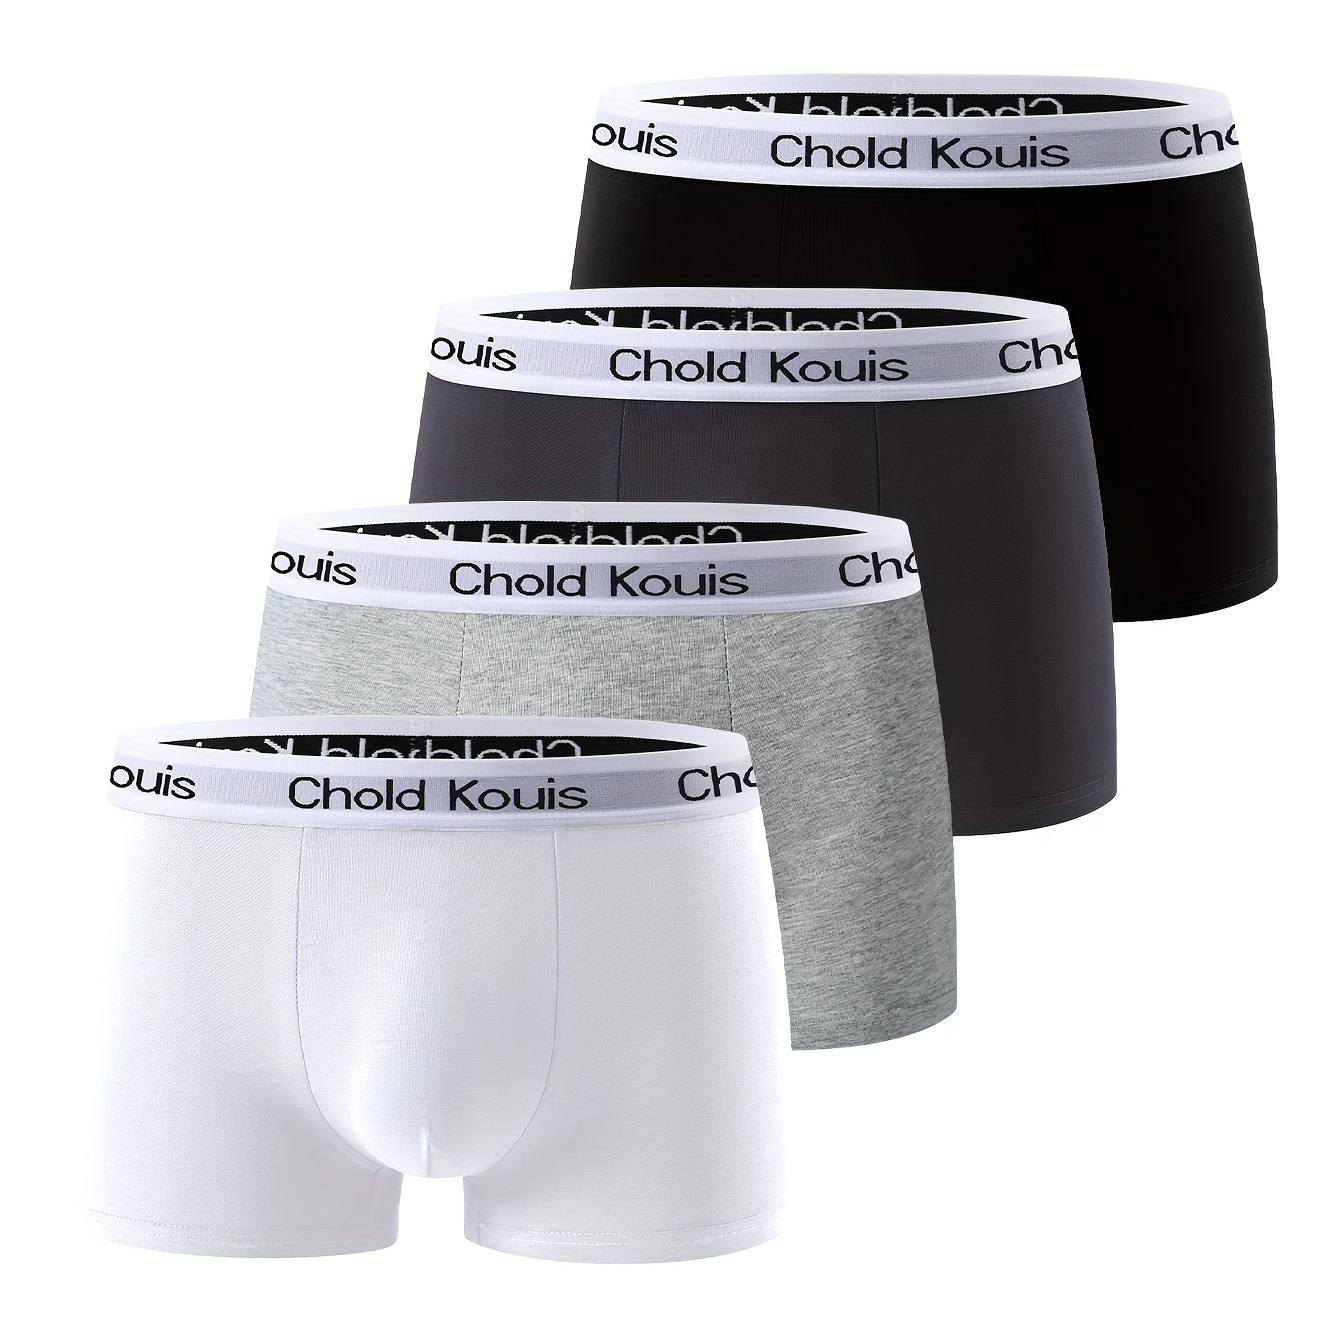 

Large Size 4 Pcs Men's Stylish Letter Print Boxer Briefs, Comfy & Antibacterial Underwear Set